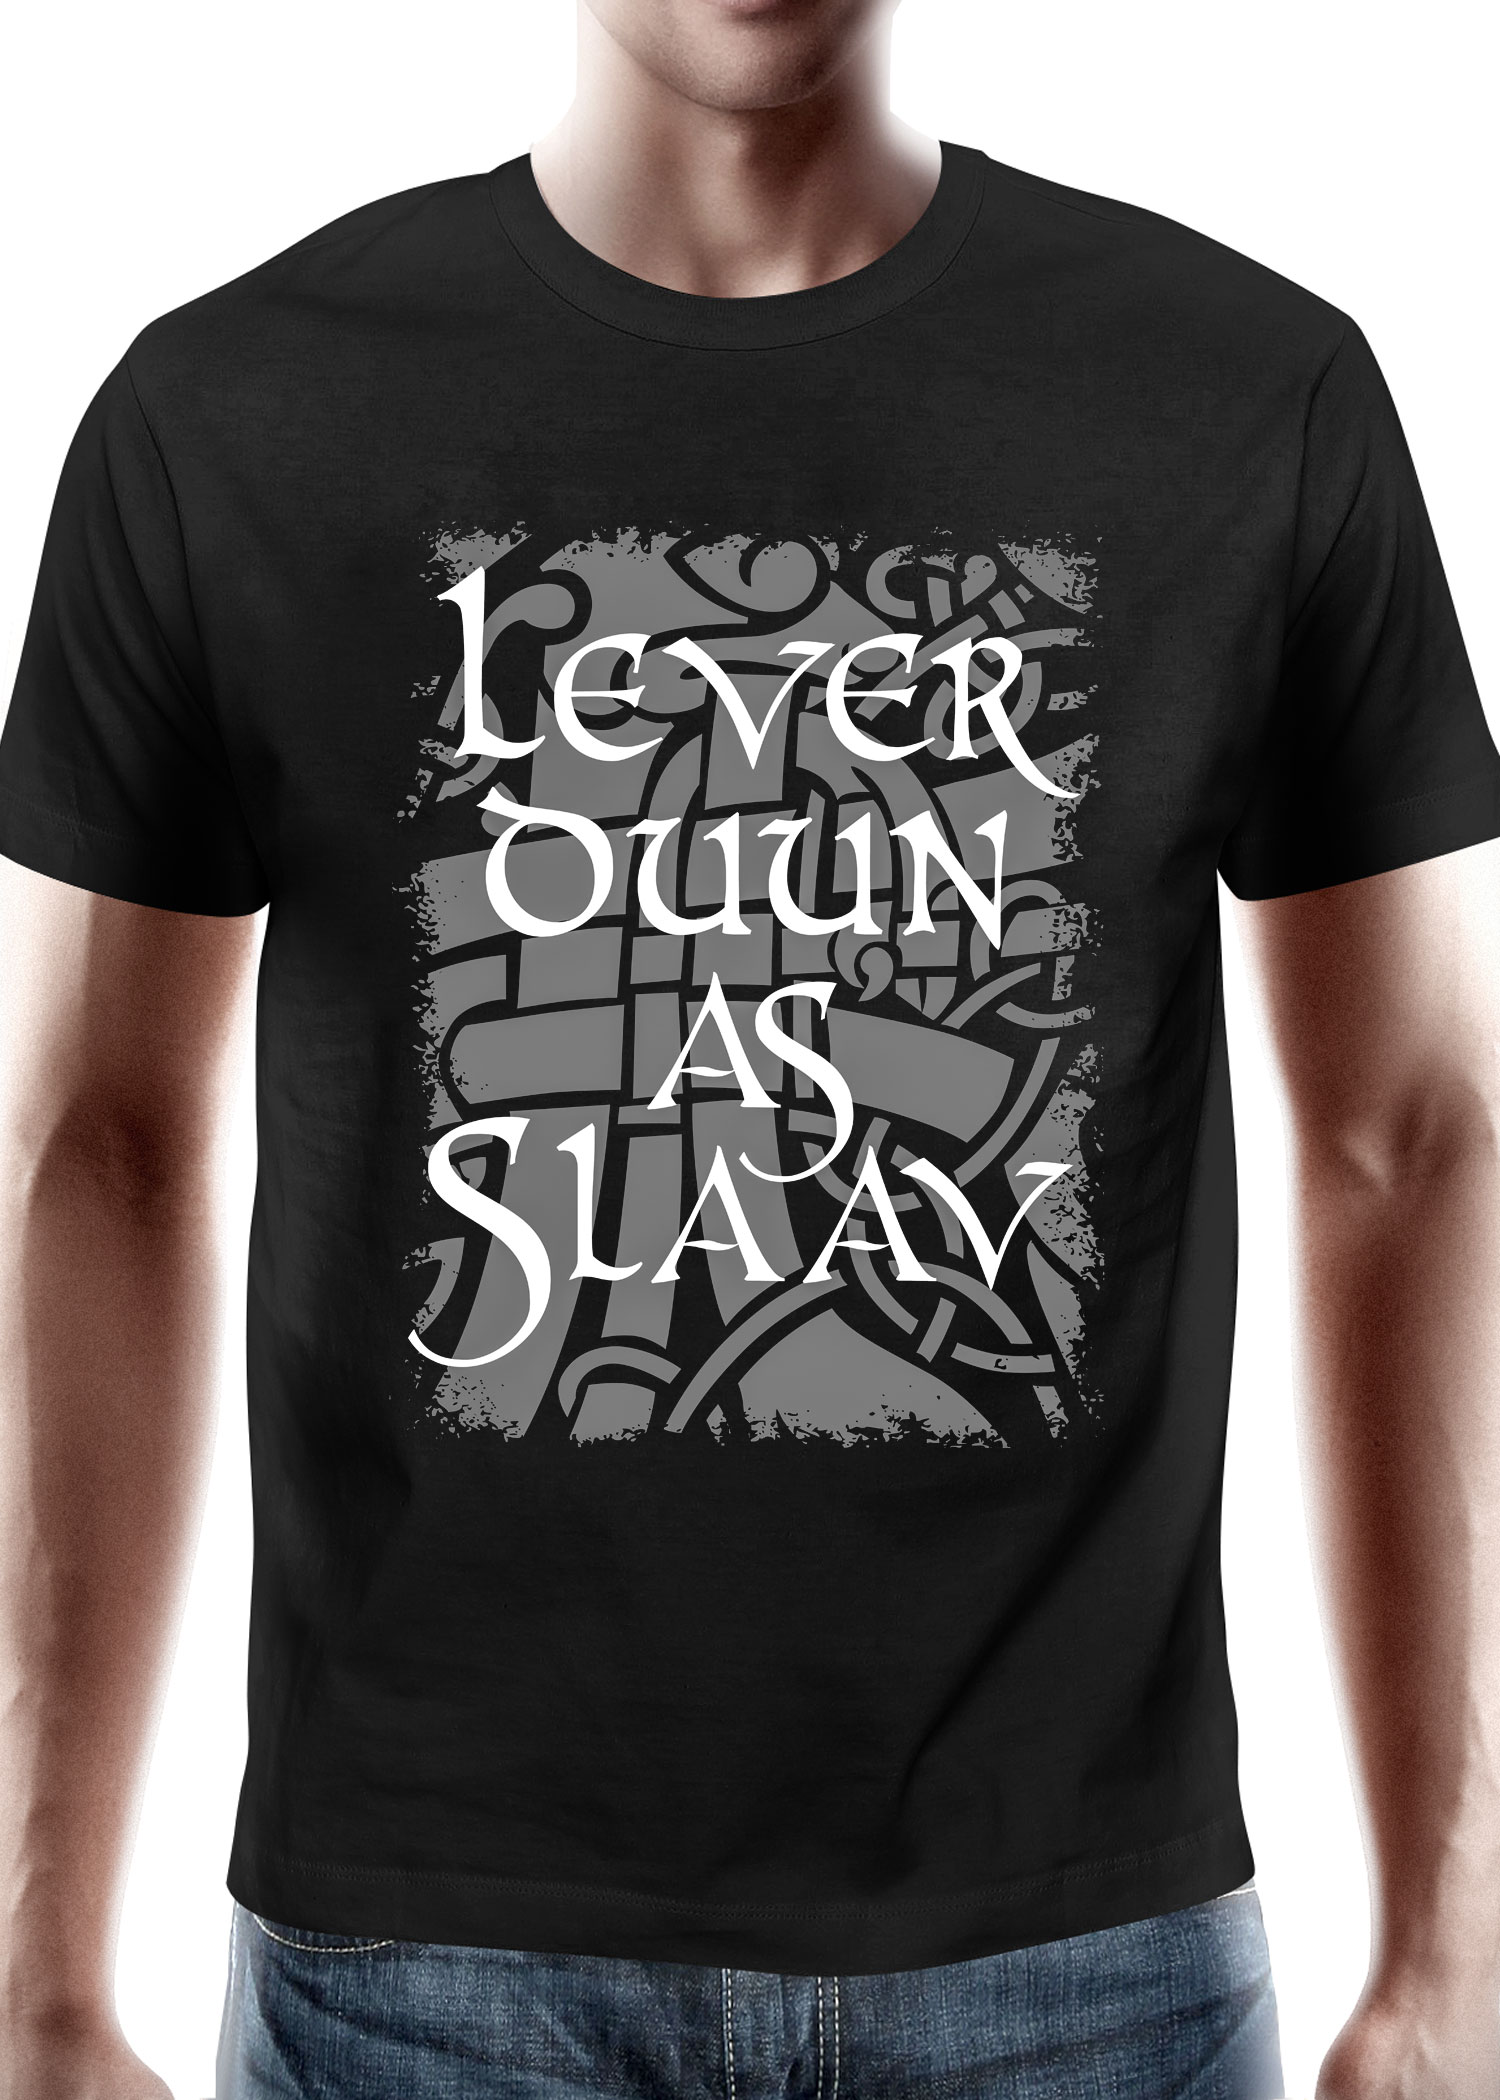 Lever Duun as Slaav - Wacken Brauerei, T-Shirt, Größe XXL